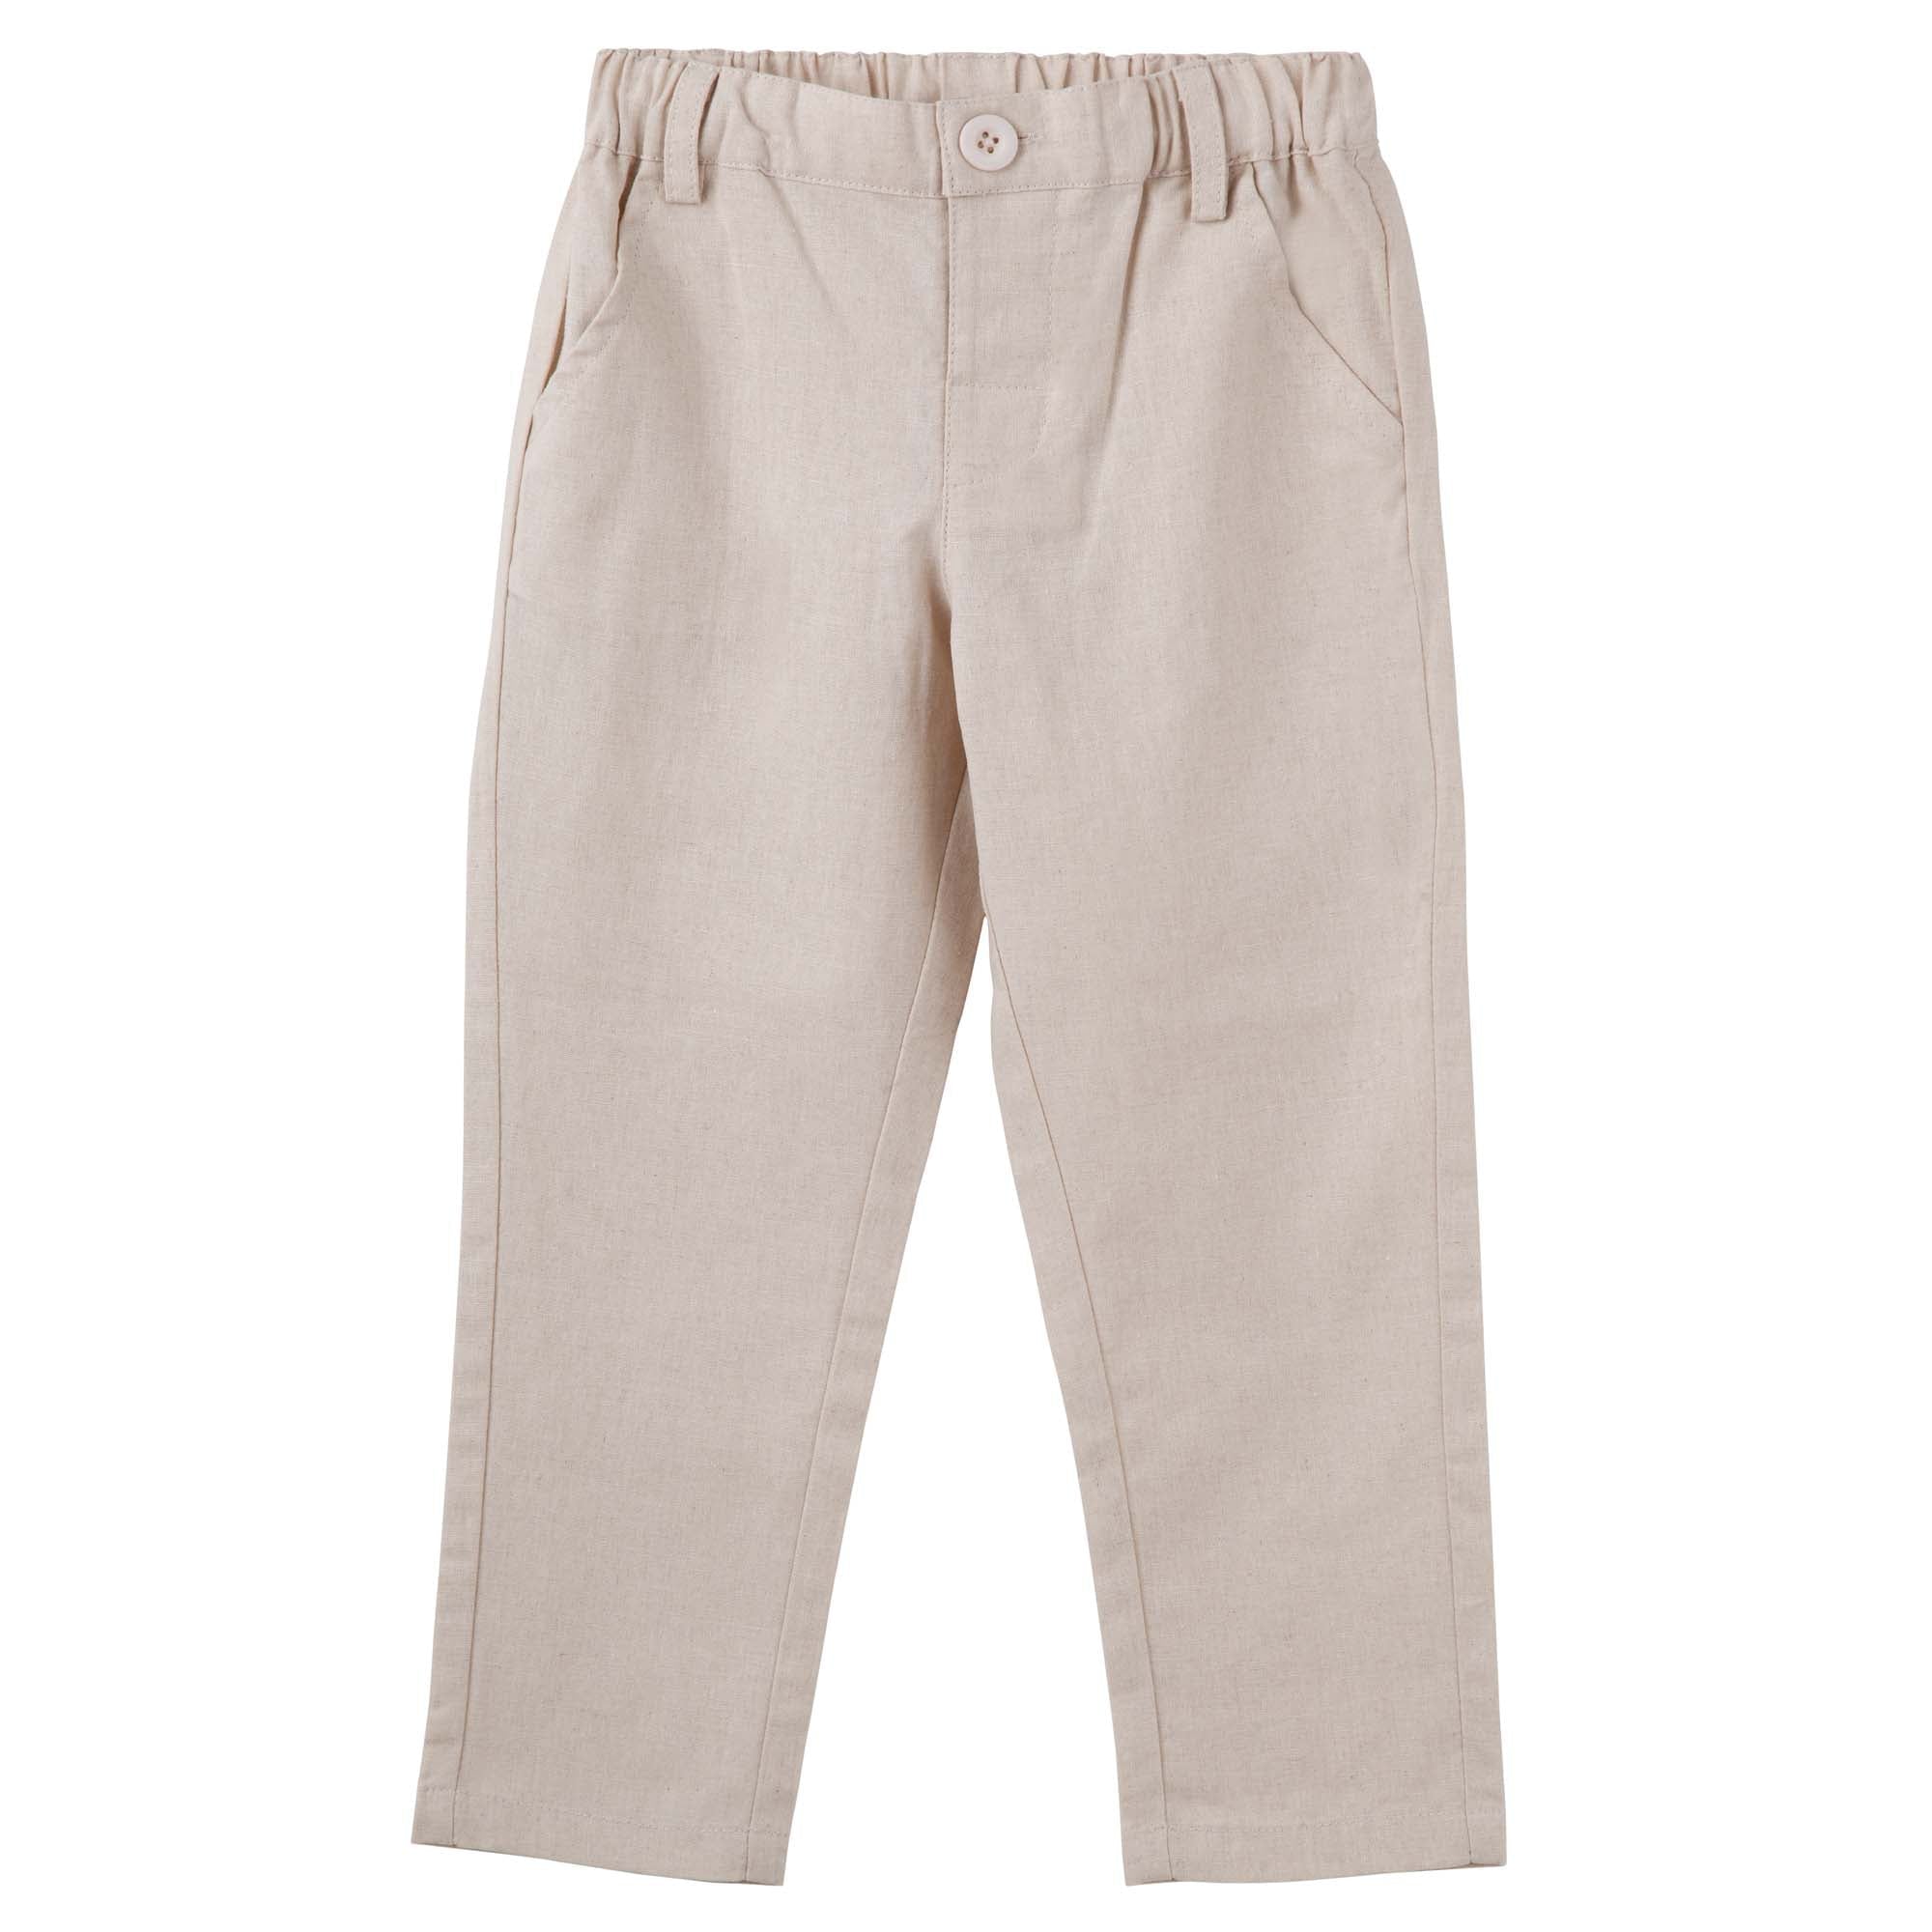 Designer Kidz Boys Tops Finley Linen Pants